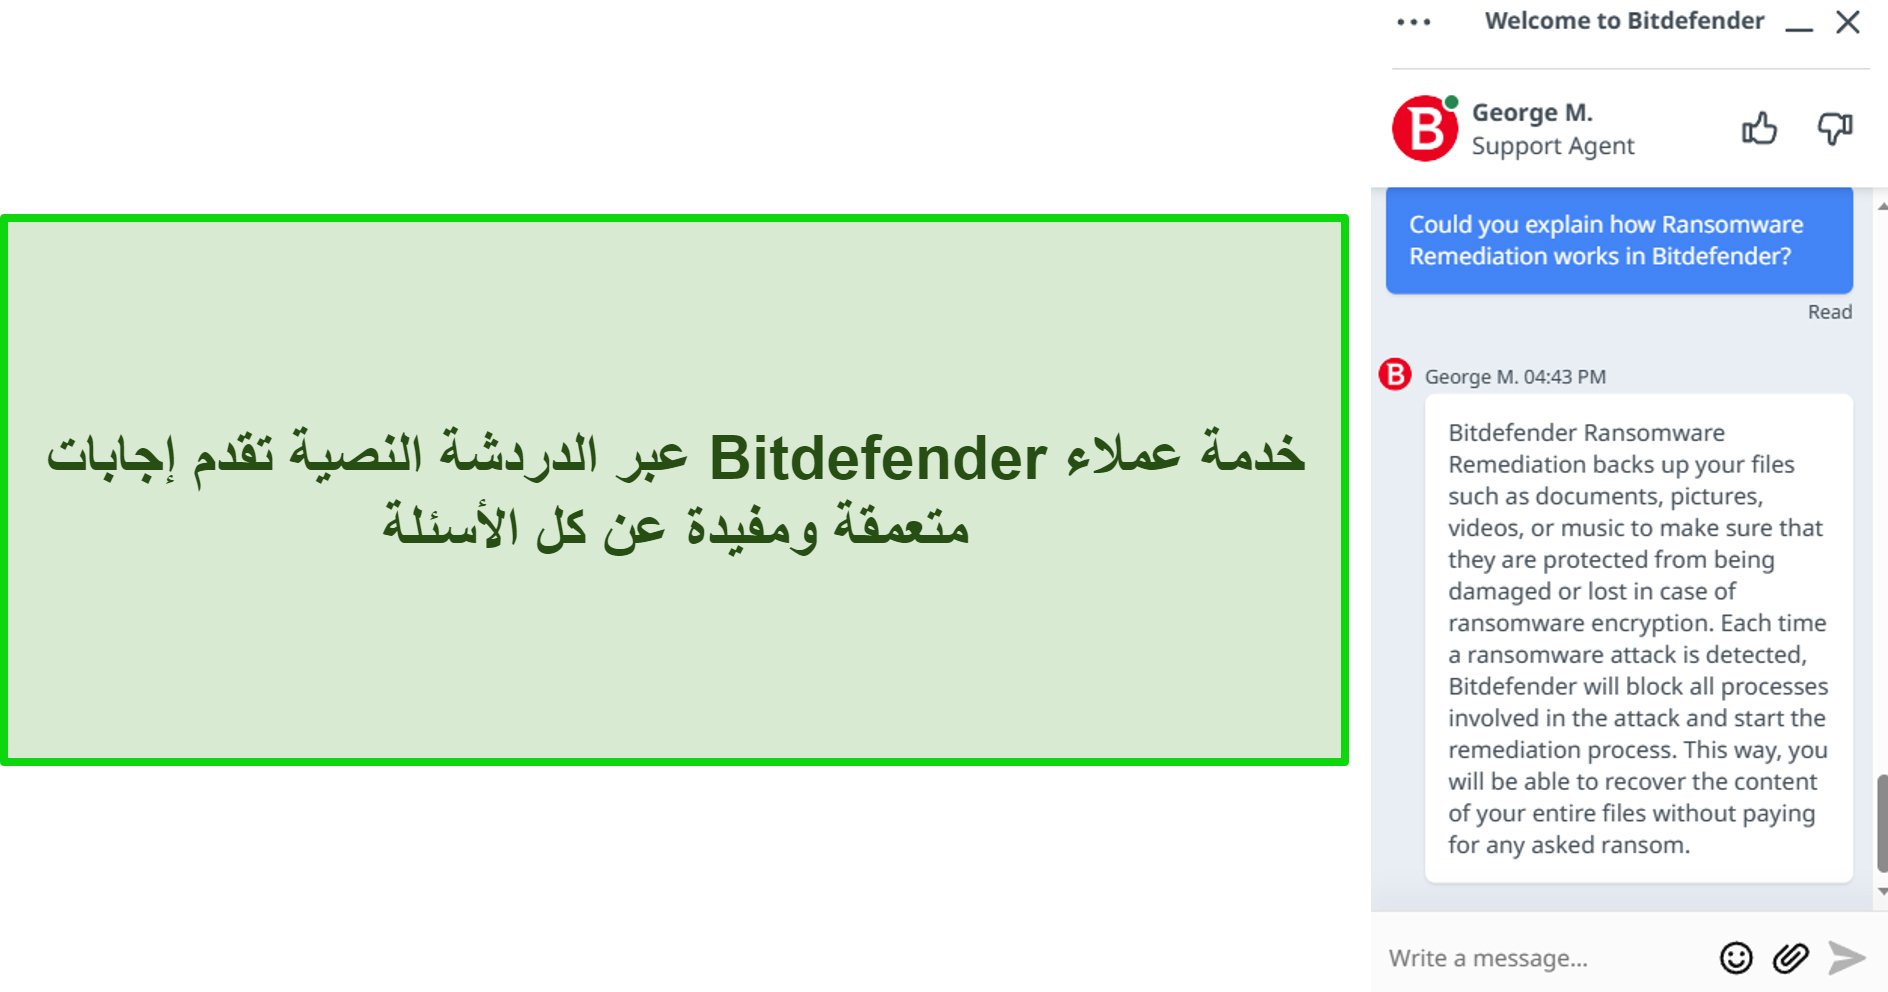 خدمة عملاء Bitdefender عبر الدردشة النصية تقدم إجابات متعمقة ومفيدة عن كل الأسئلة